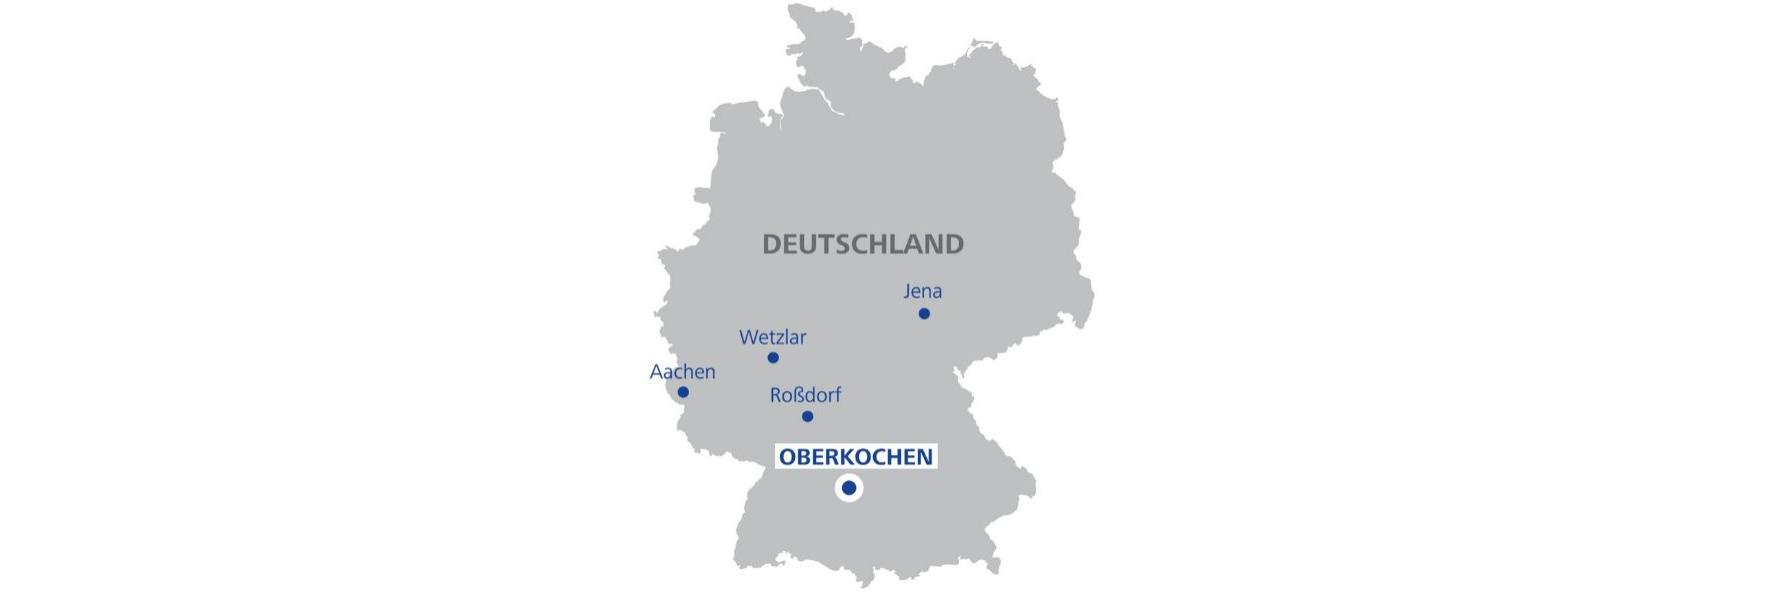 Oberkochen auf der Deutschland-Karte